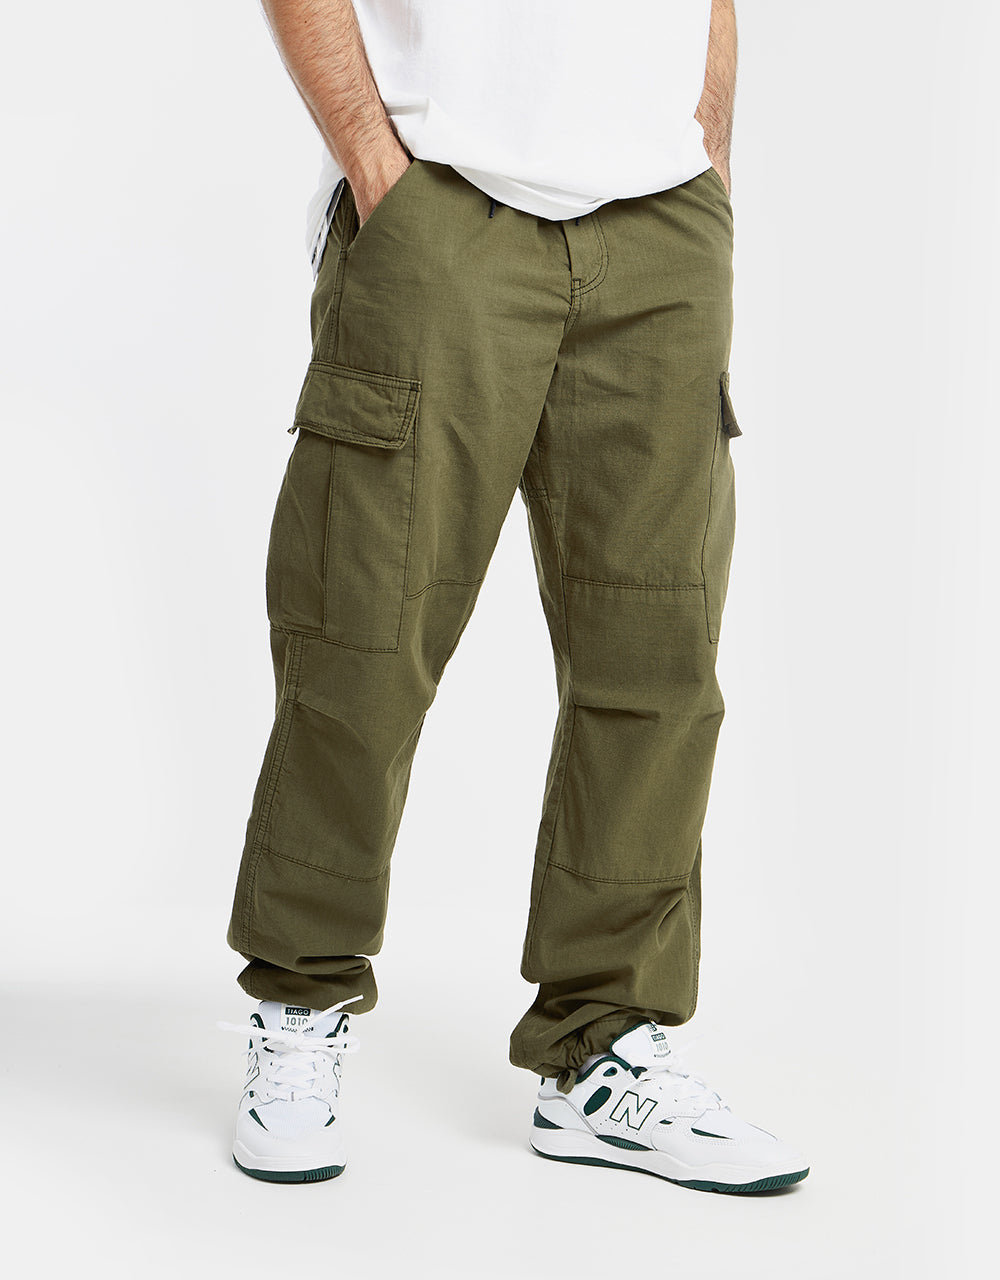 Nike SB Kearny Cargo Pants Medium Olive/White – Xtreme Boardshop (XBUSA.COM)